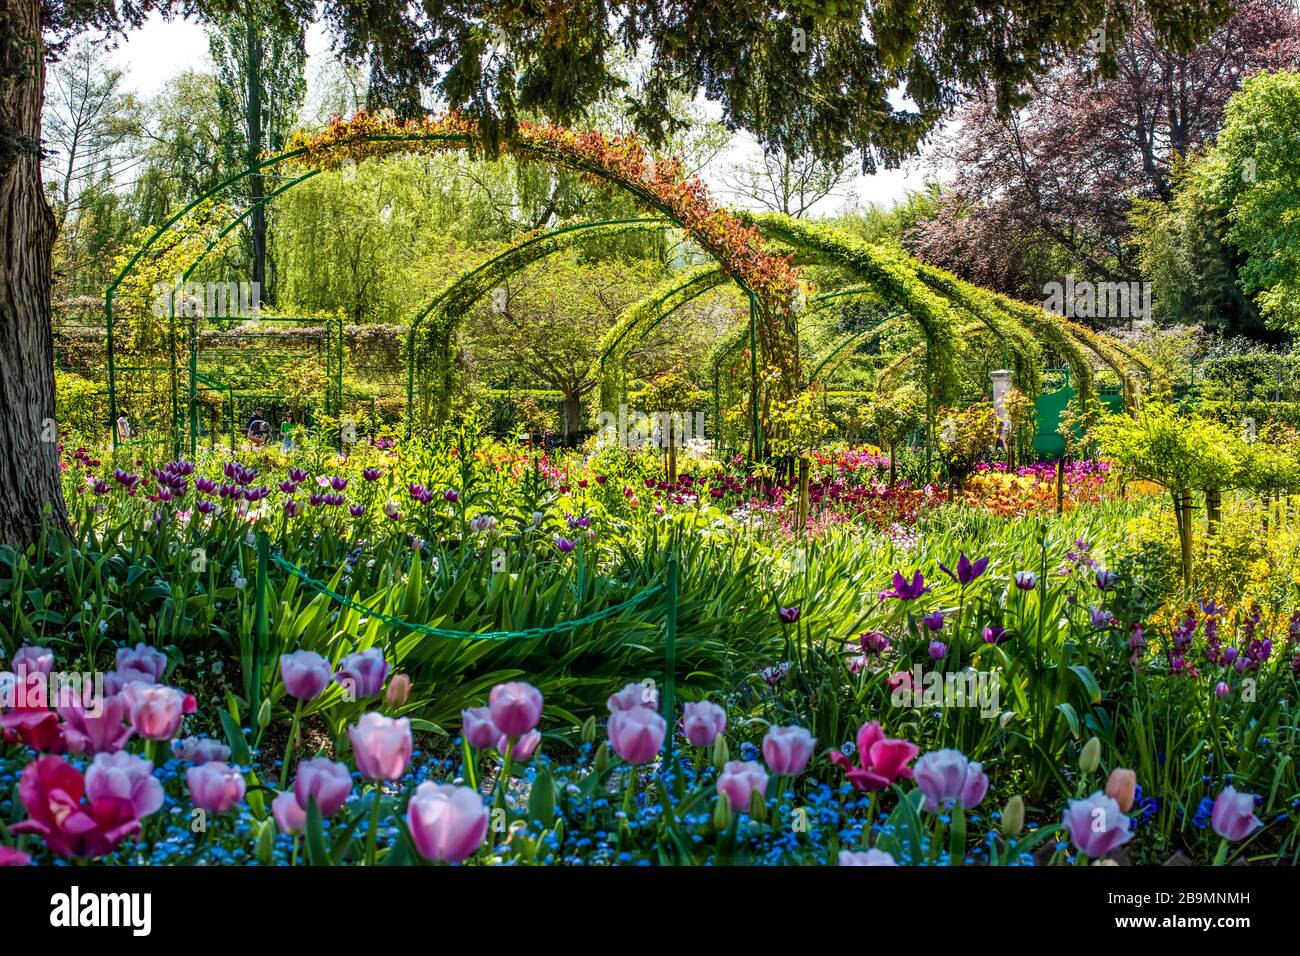 Garden arches in Monet's garden, Giverny, France Stock Photo